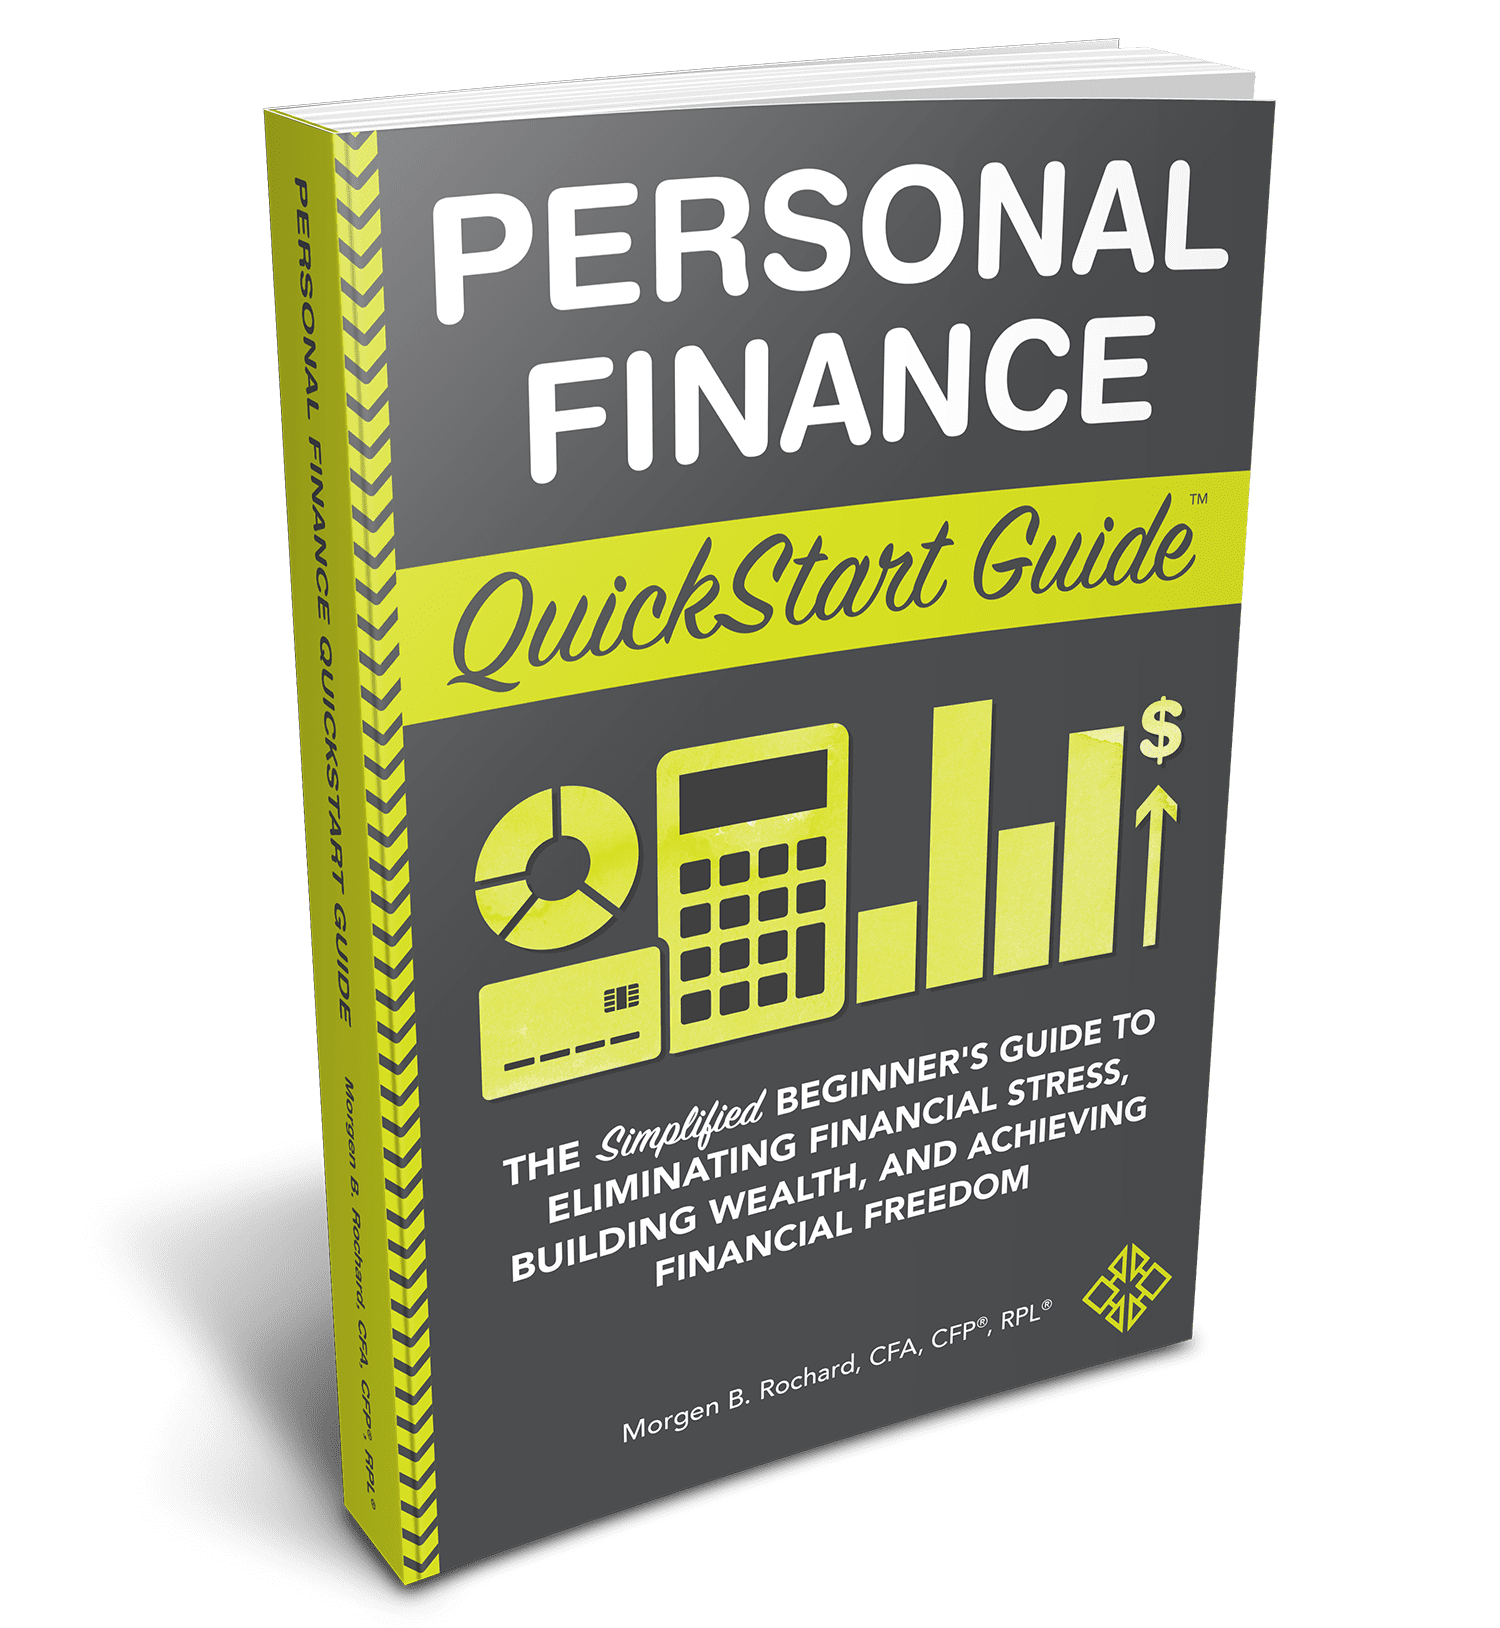 Personal Finance QuickStart Guide by Morgen B Rochard, CFA, CFP®, RLP®